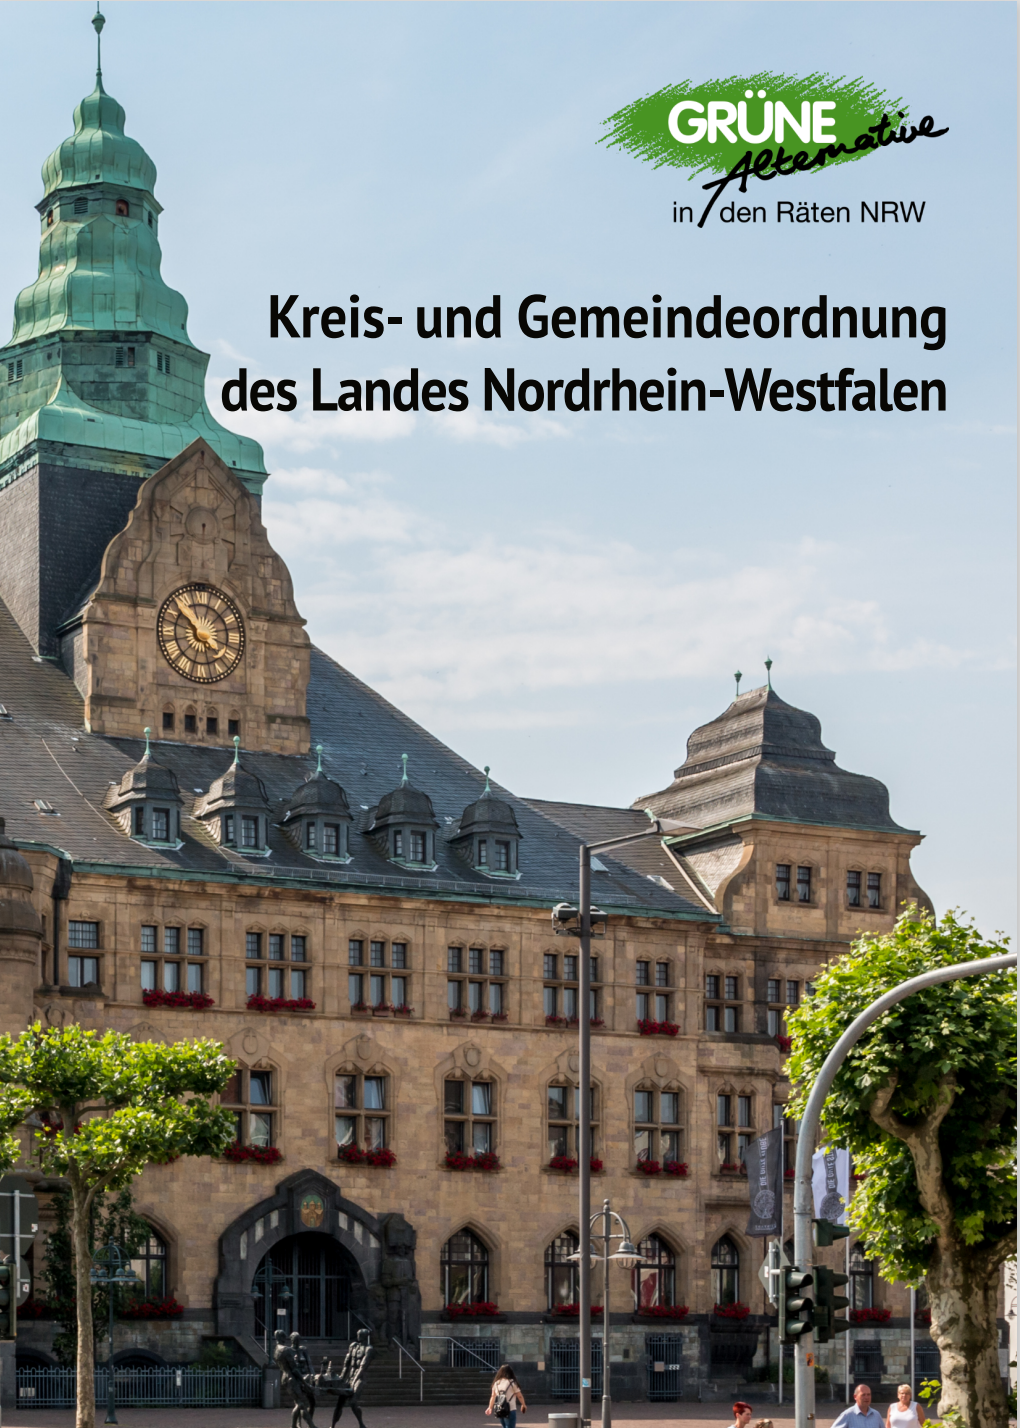 Cover mit Bild von Rathaus in Recklinghausen